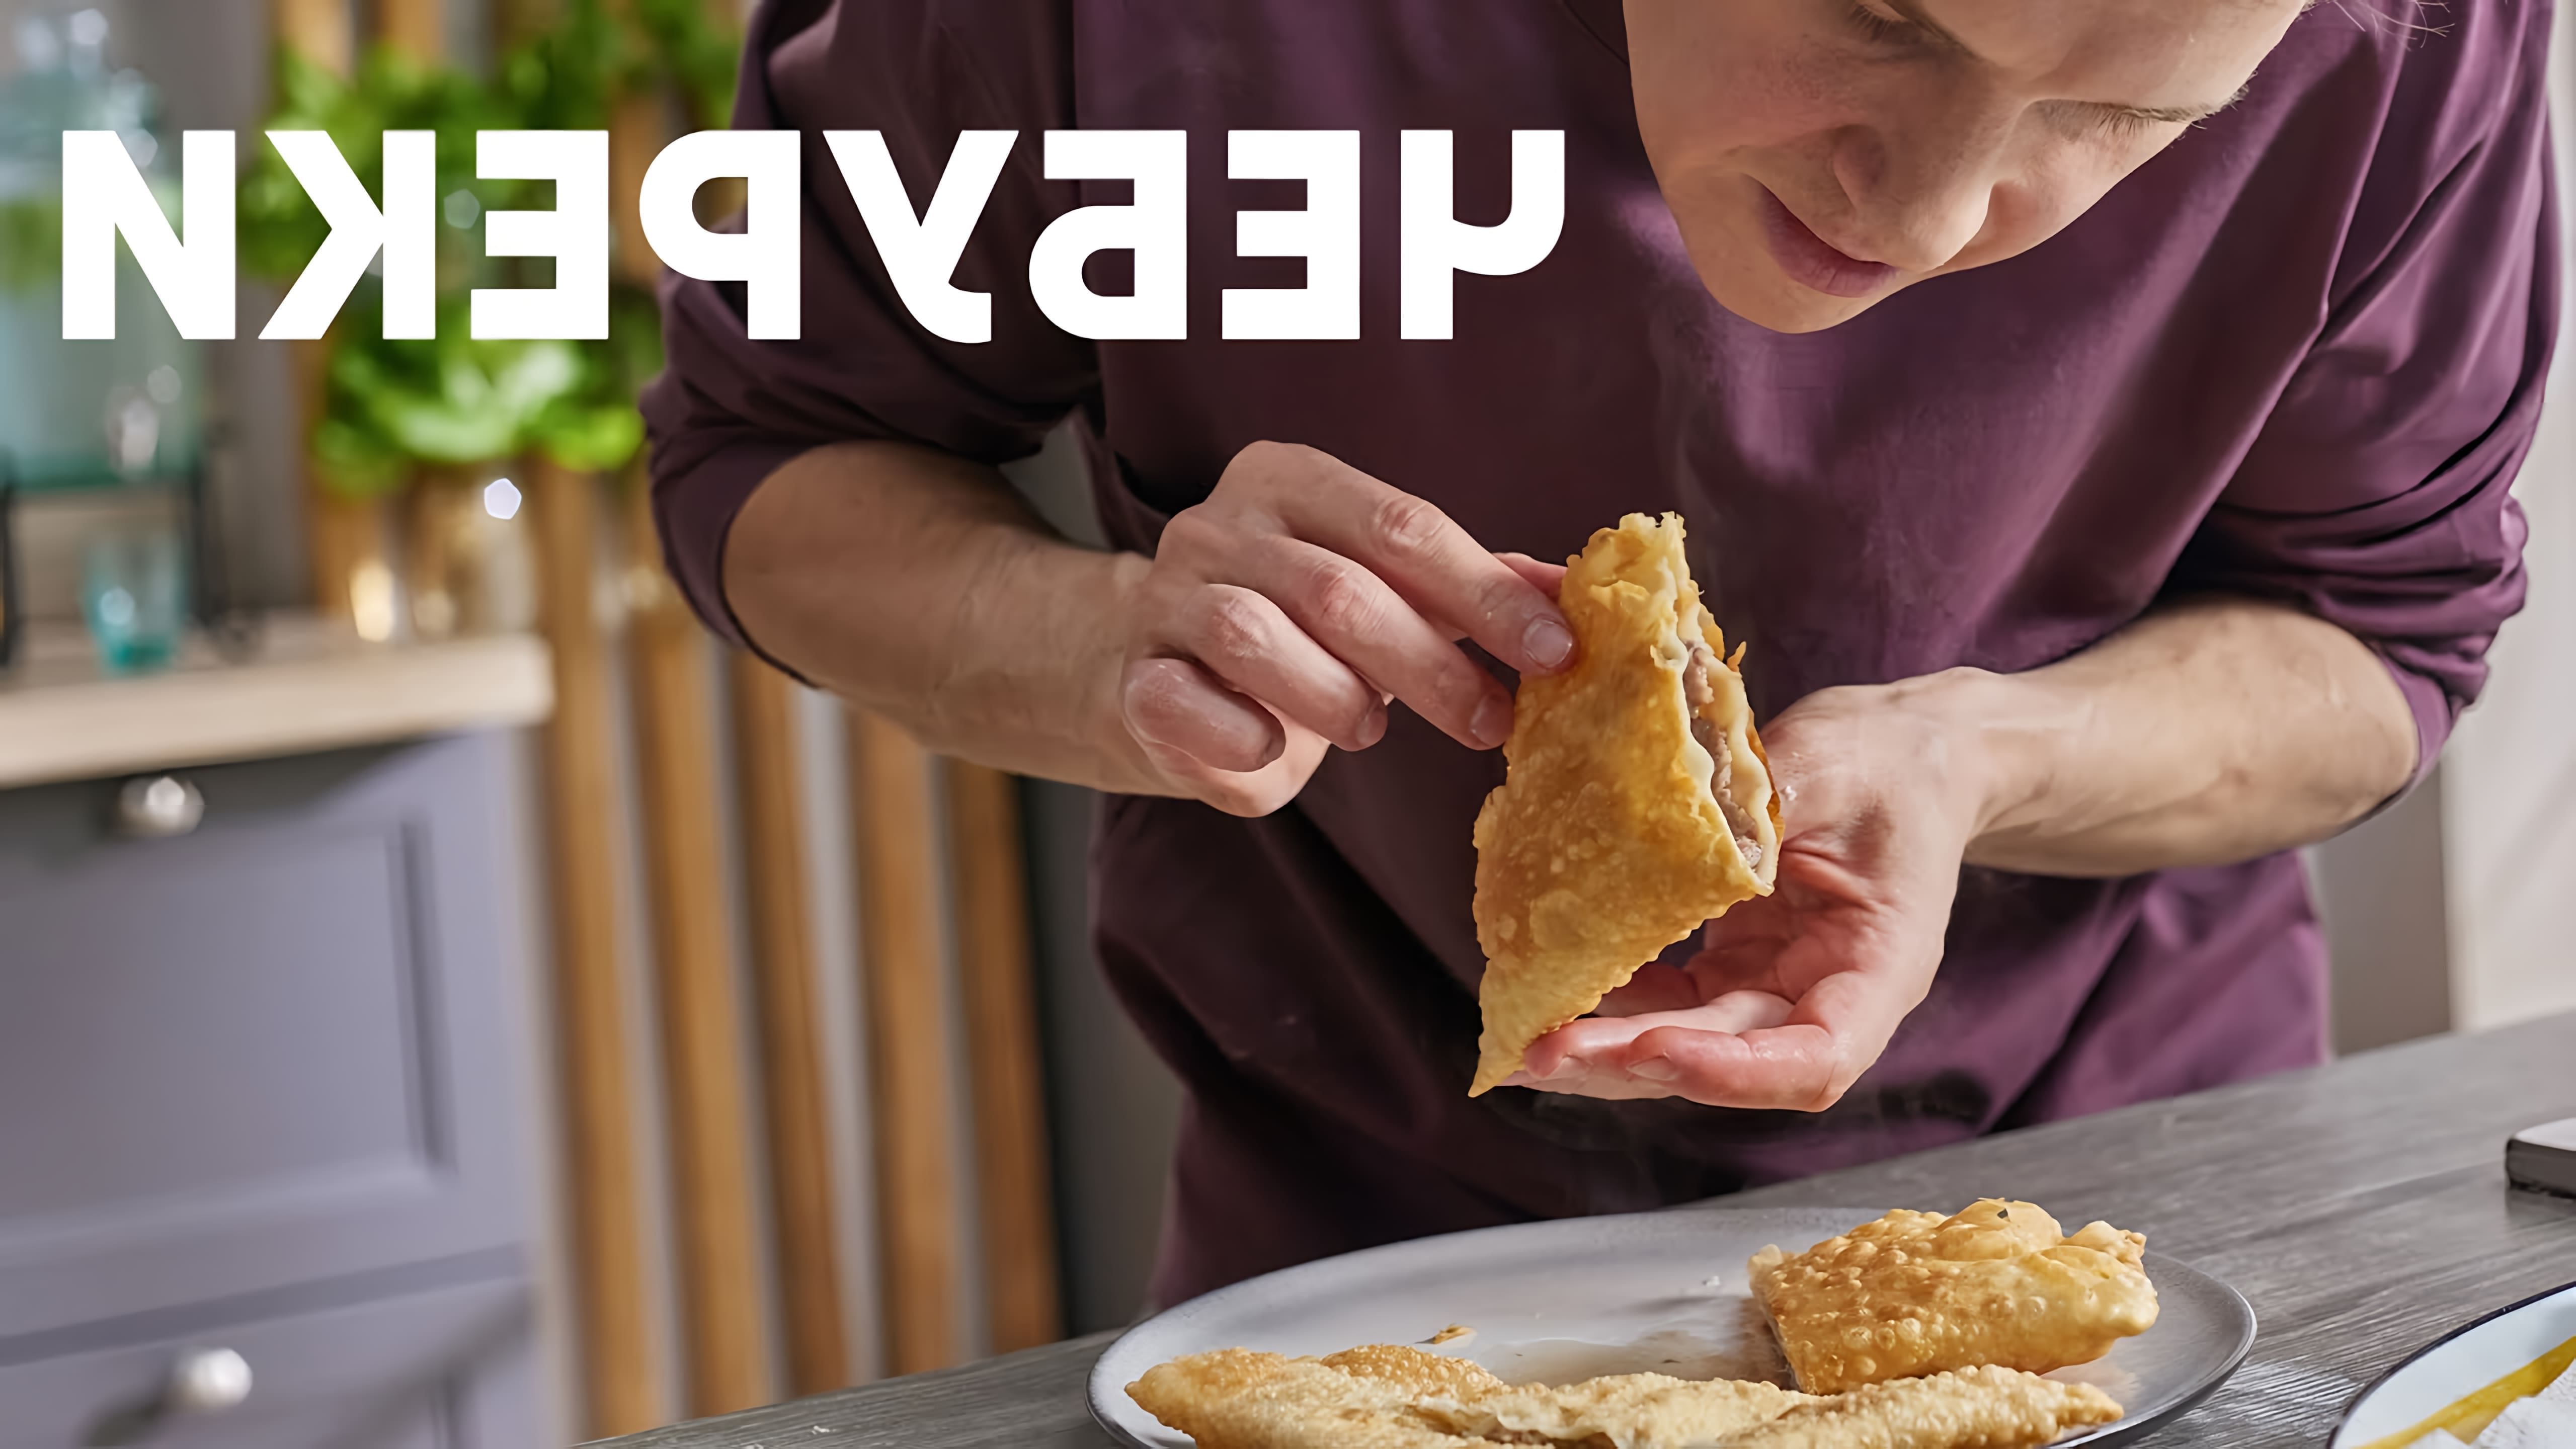 В этом видео шеф-повар Белькович показывает, как приготовить сочные чебуреки